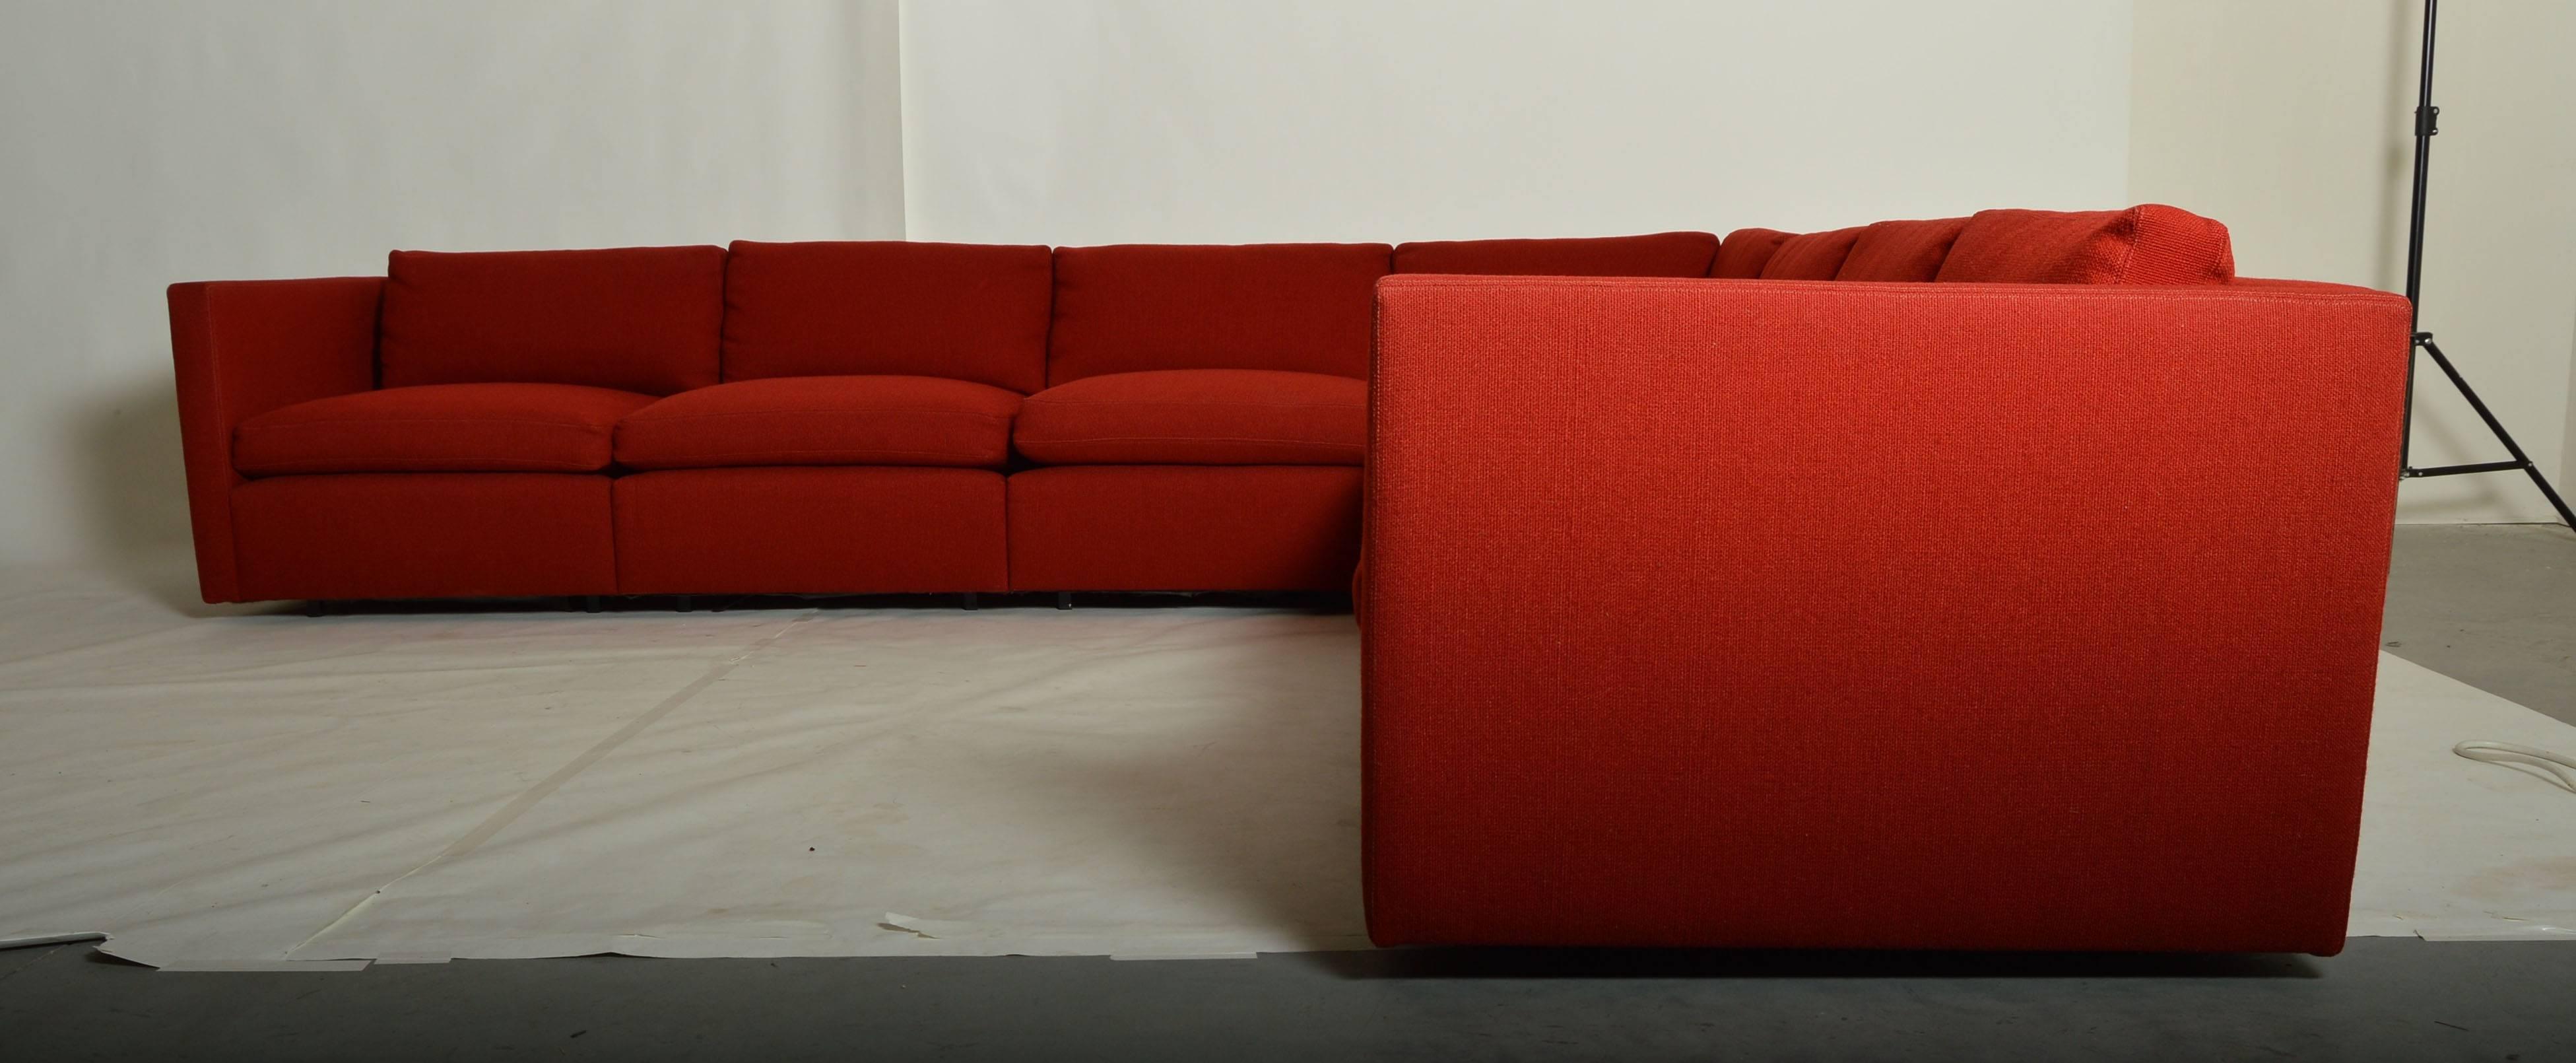 modulares sofa pfister